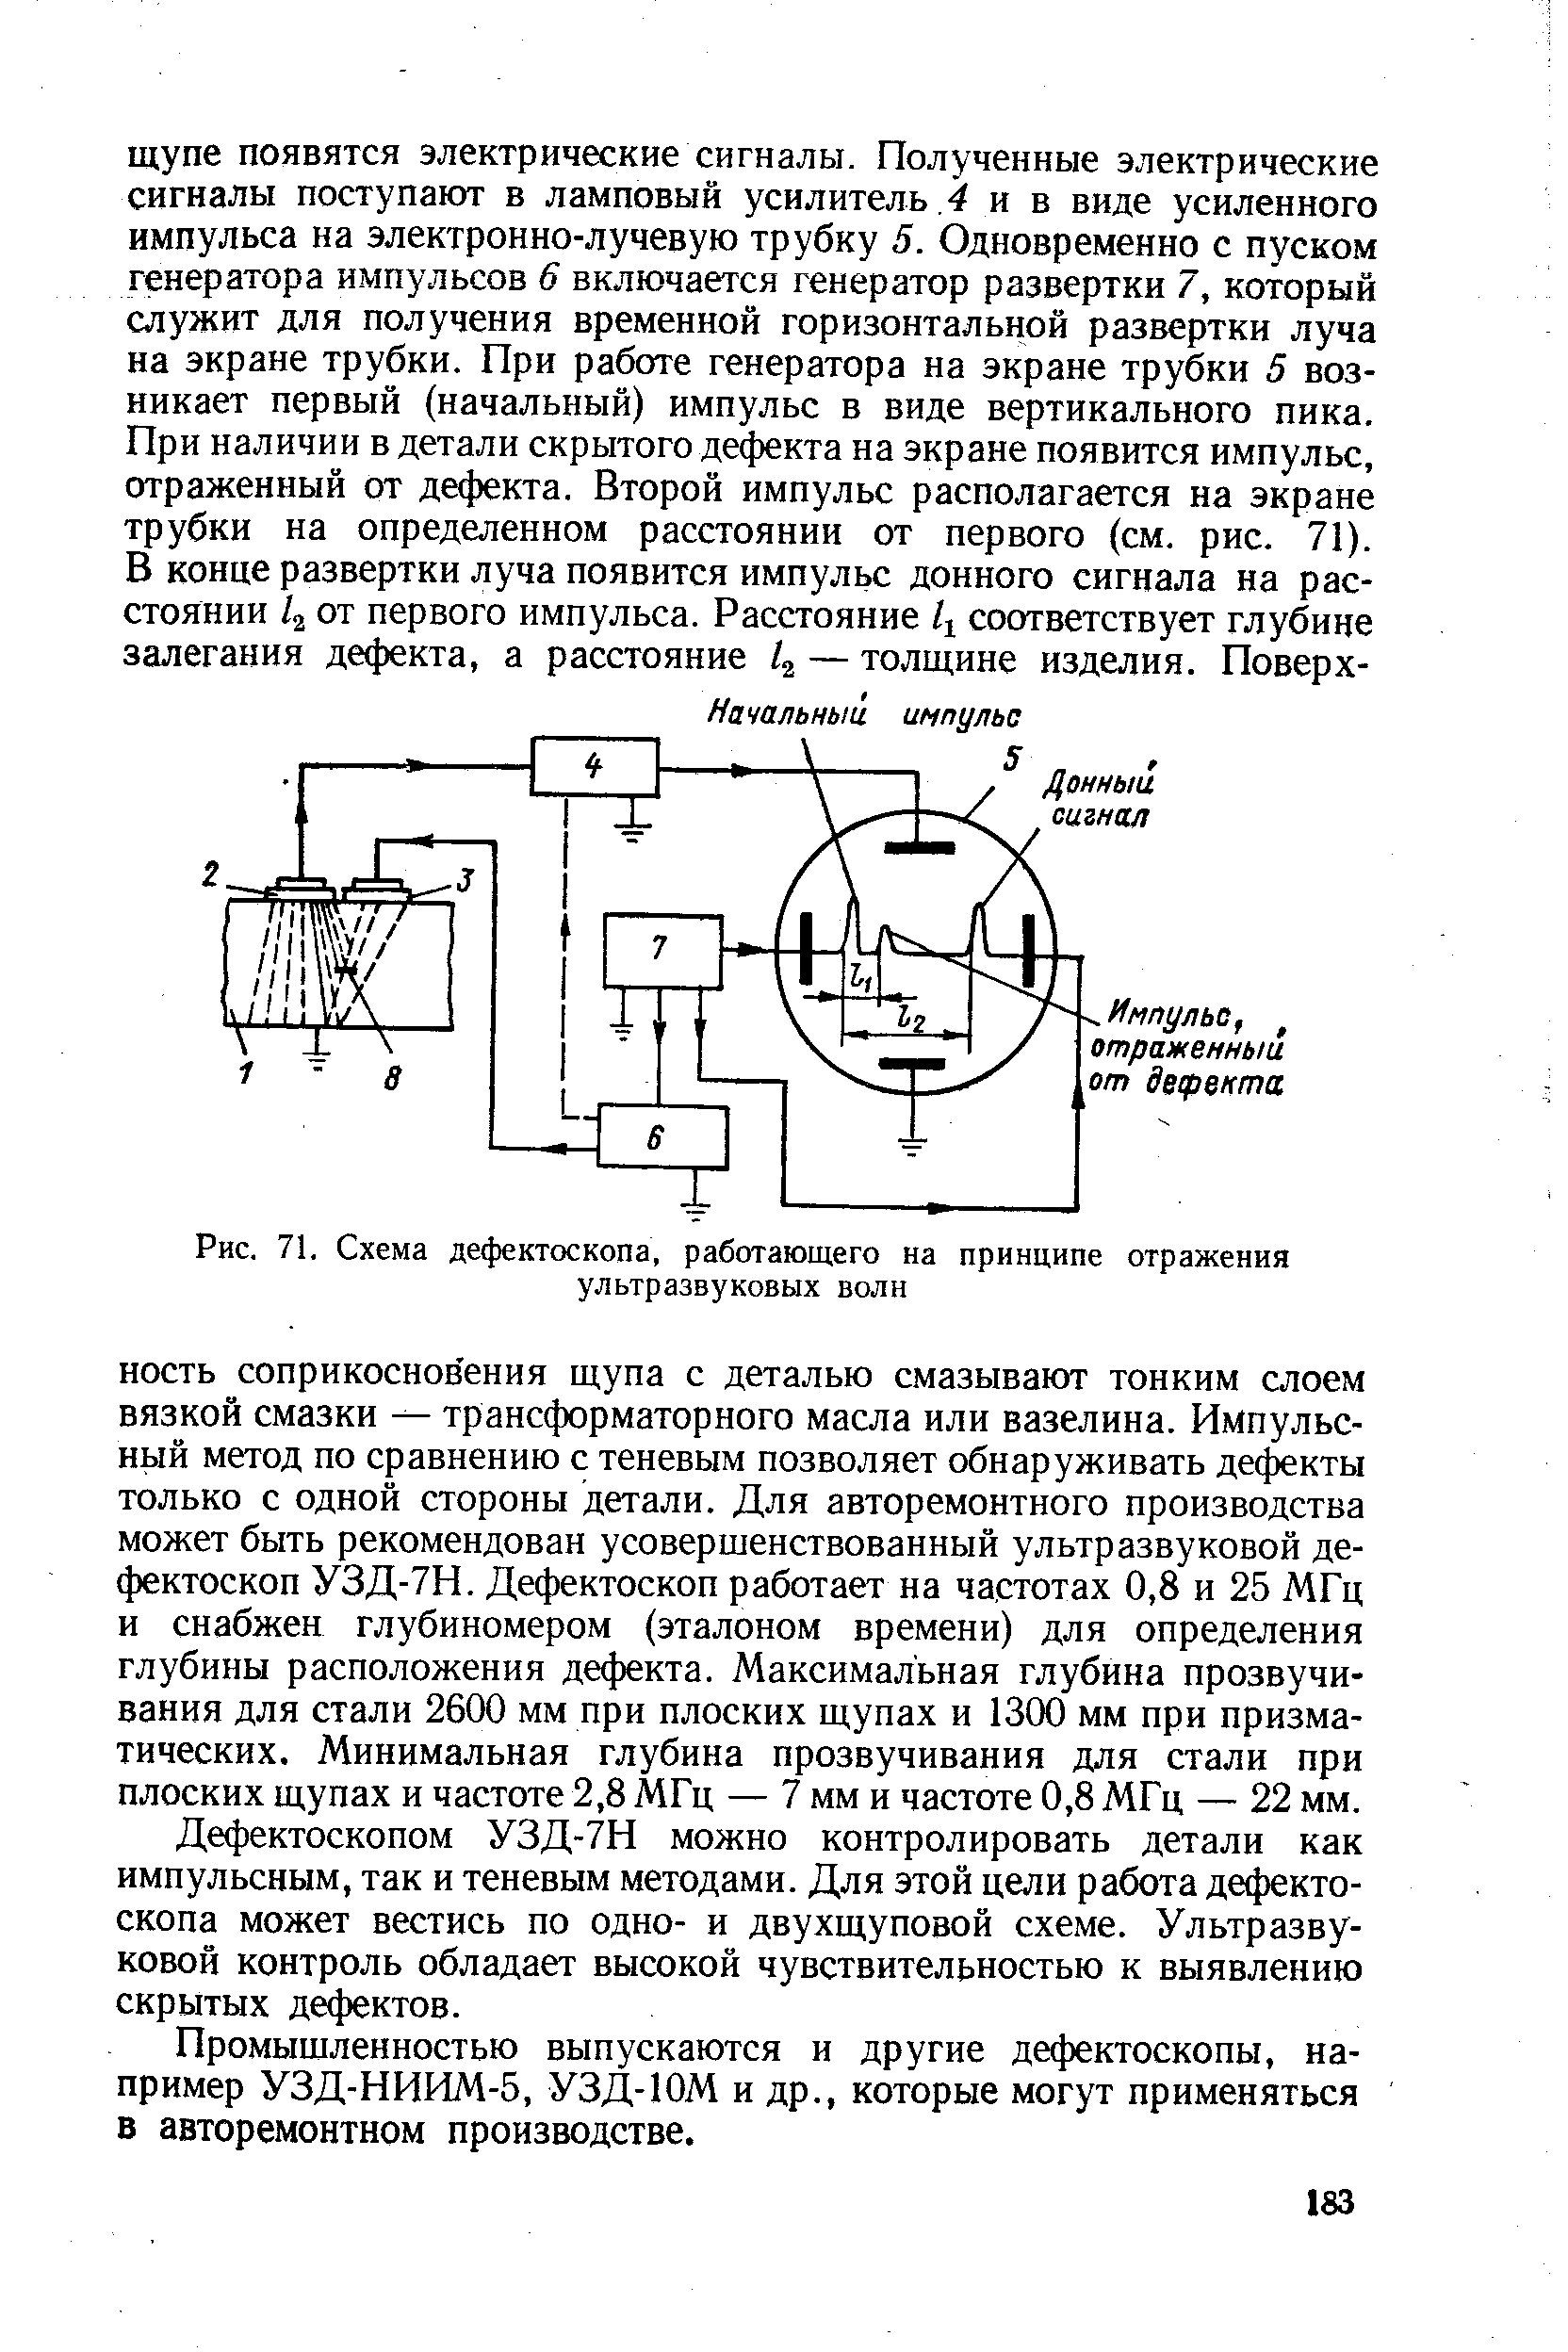 Рис. 71. Схема дефектоскопа, работающего на принципе отражения ультразвуковых волн
